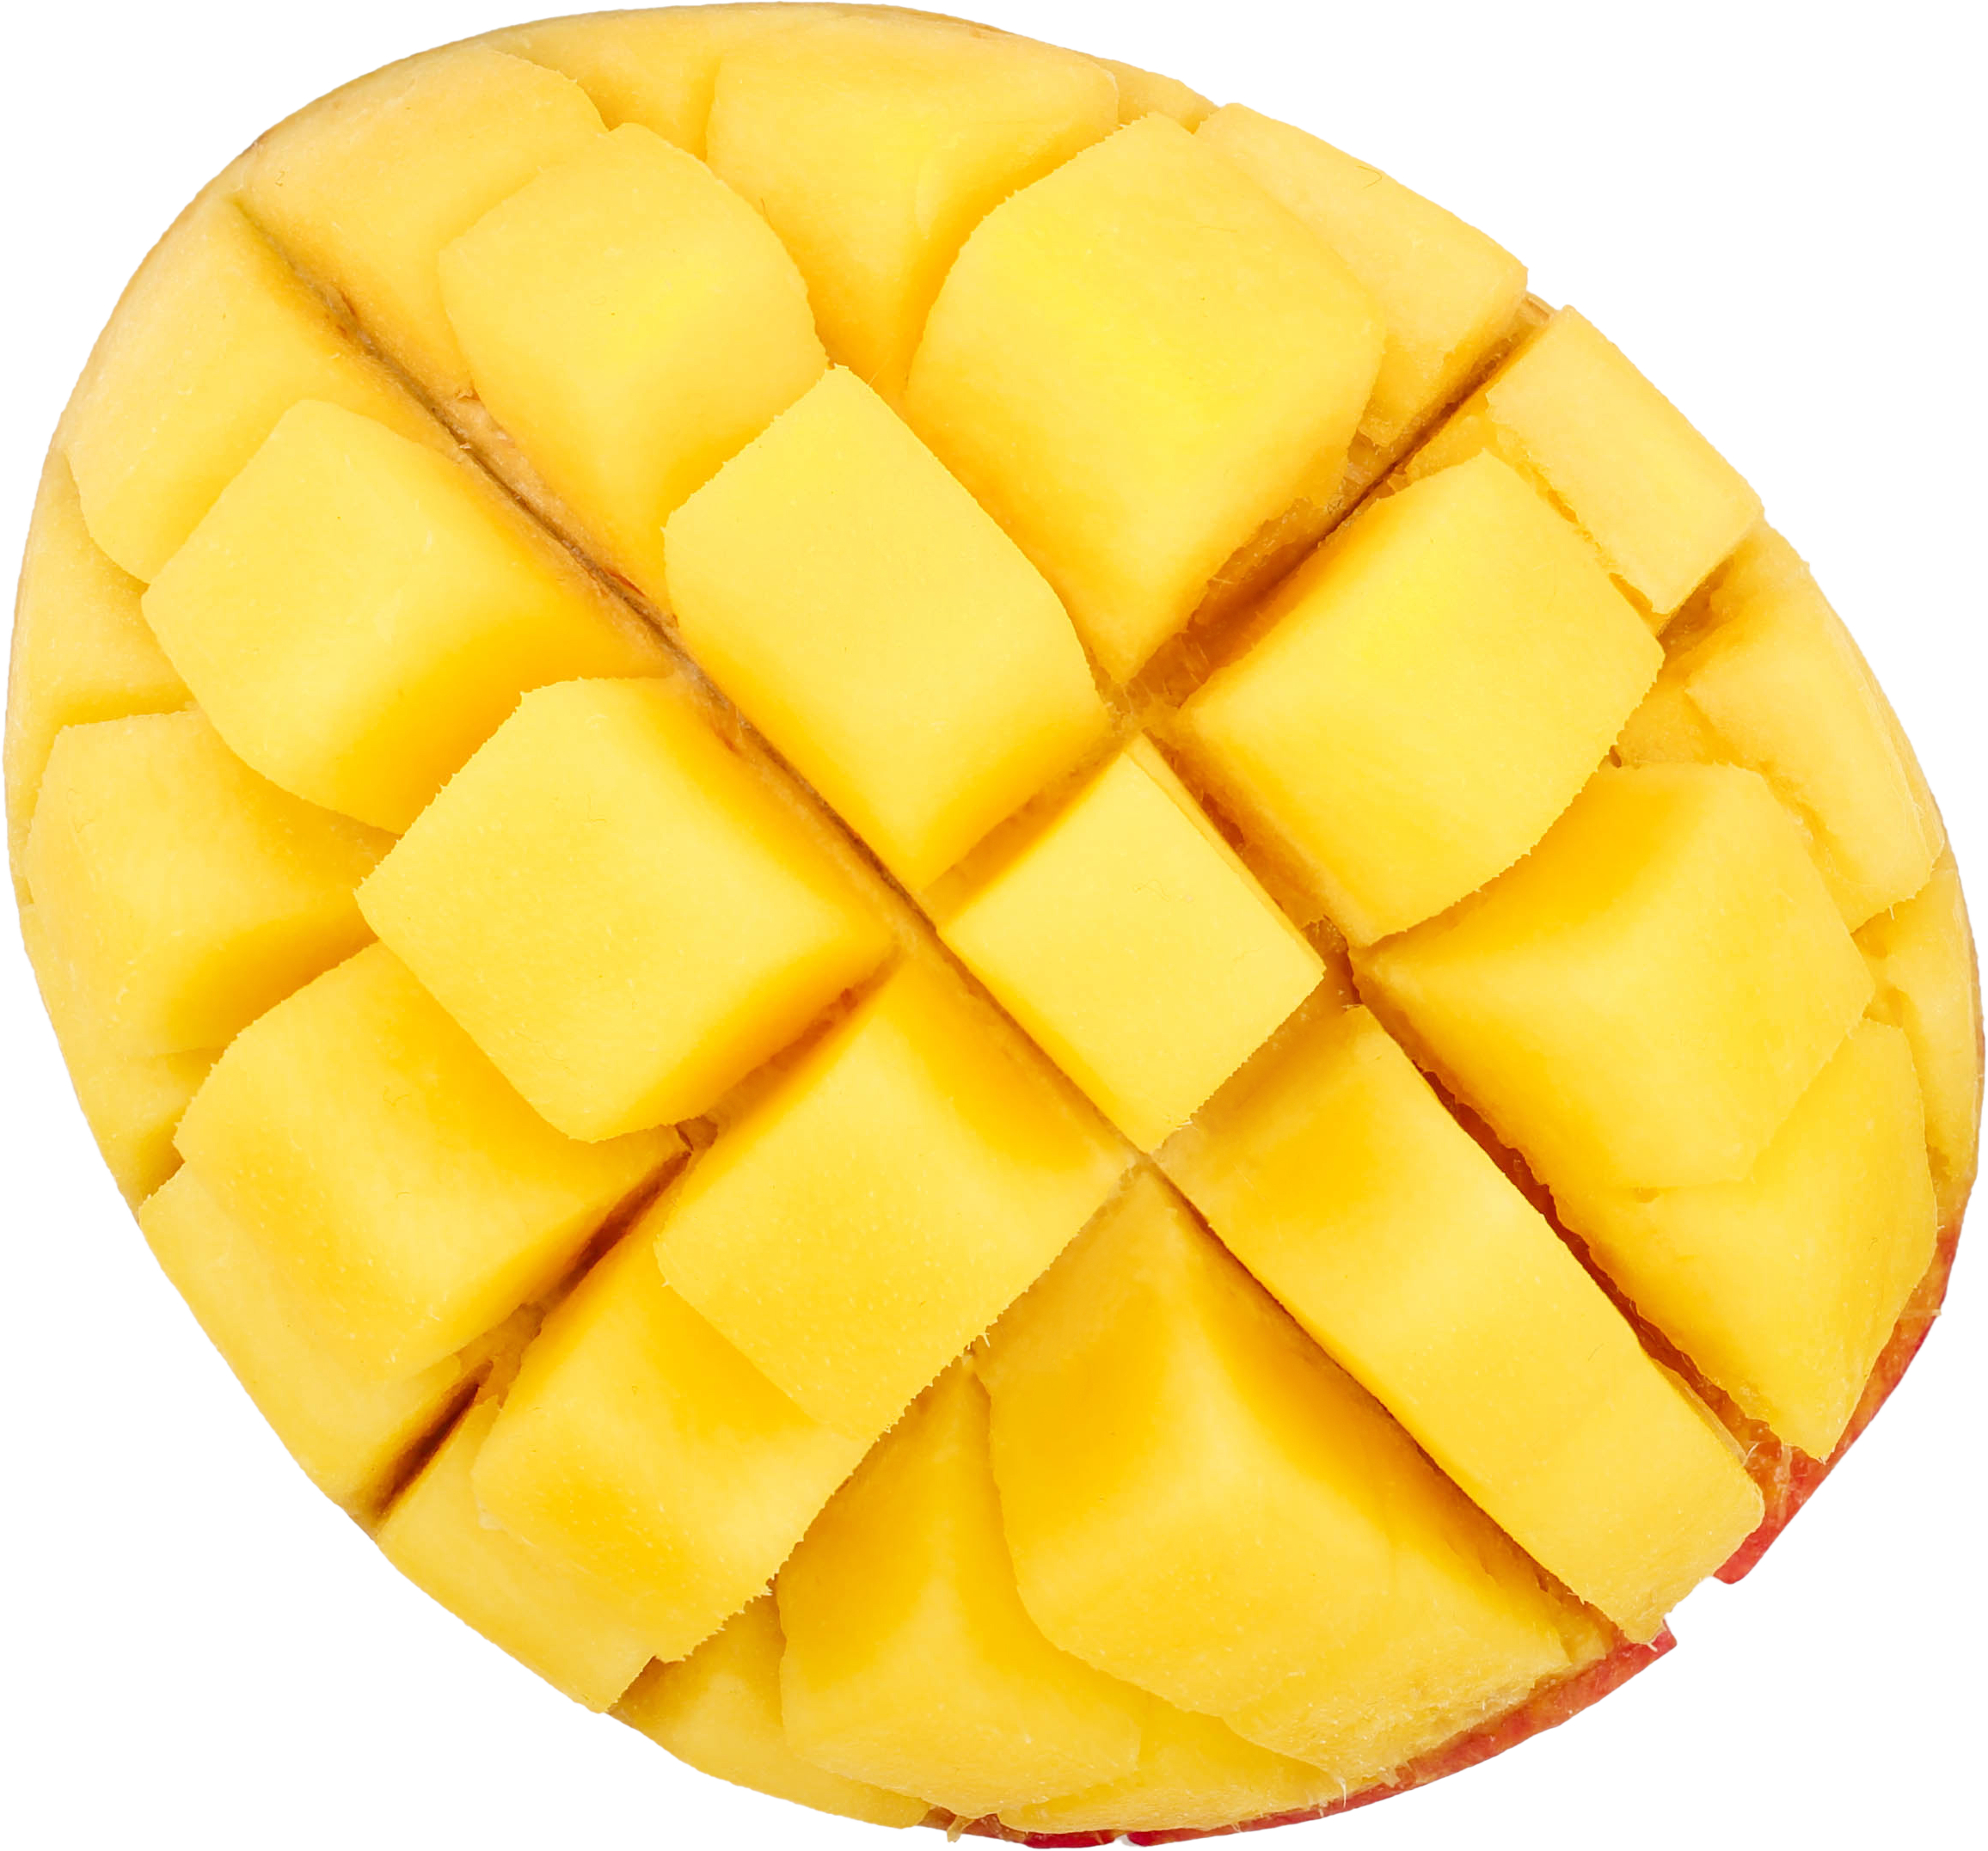 Une mangue complète coupée en cube